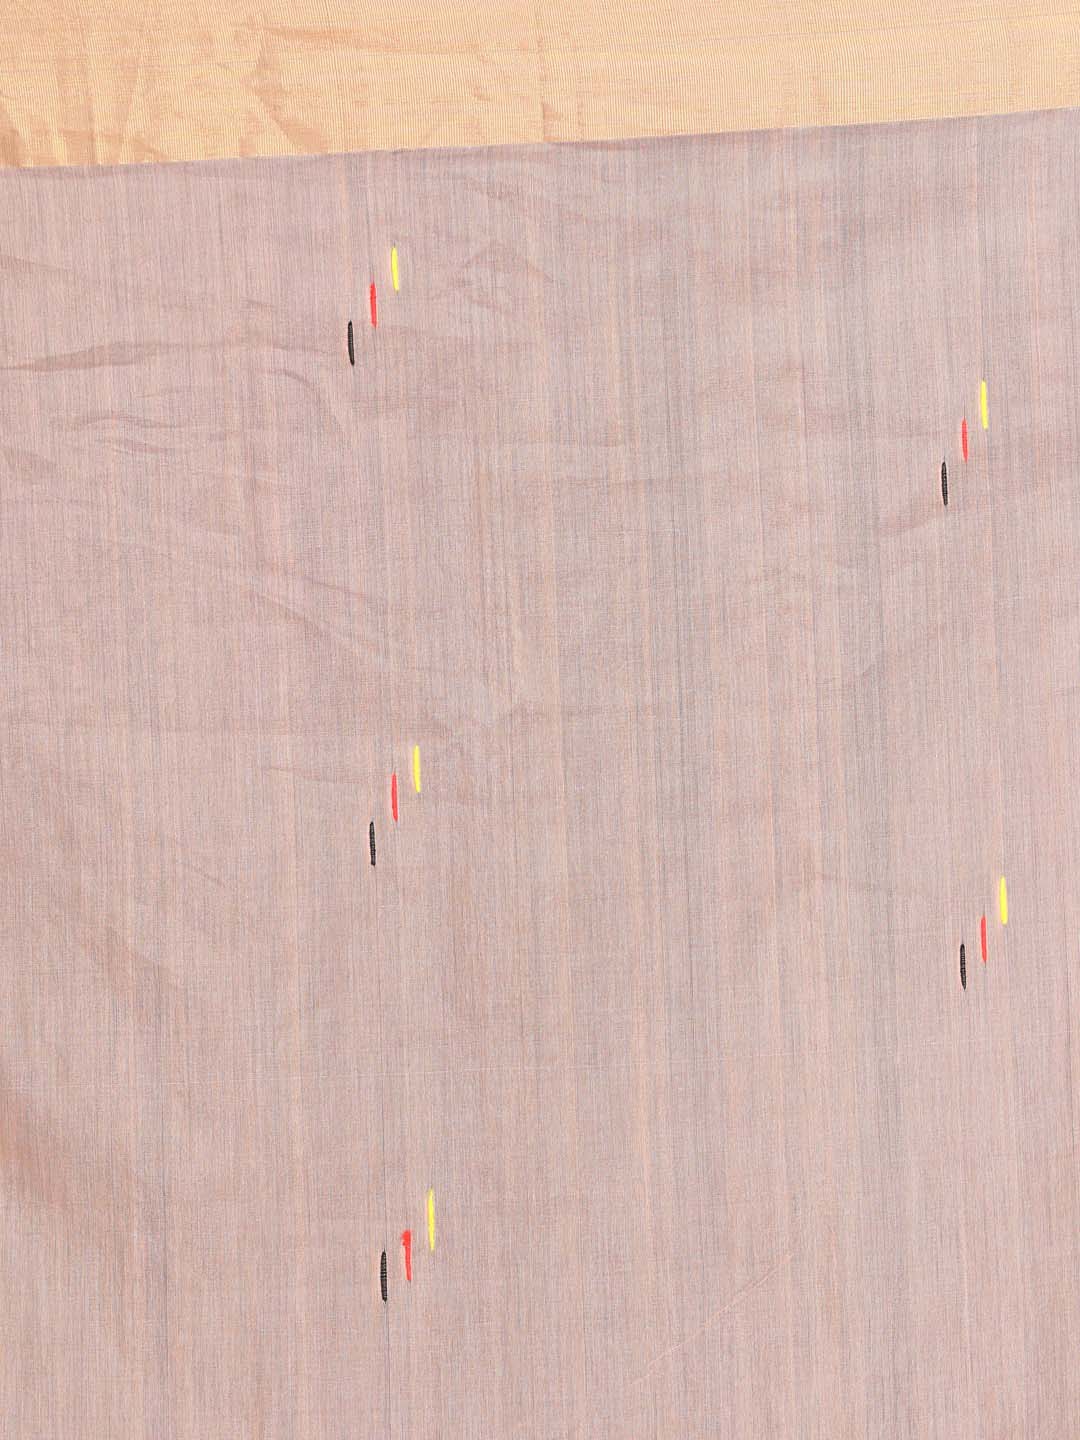 Indethnic Chanderi Handloom Silk Cotton Saree - Saree Detail View